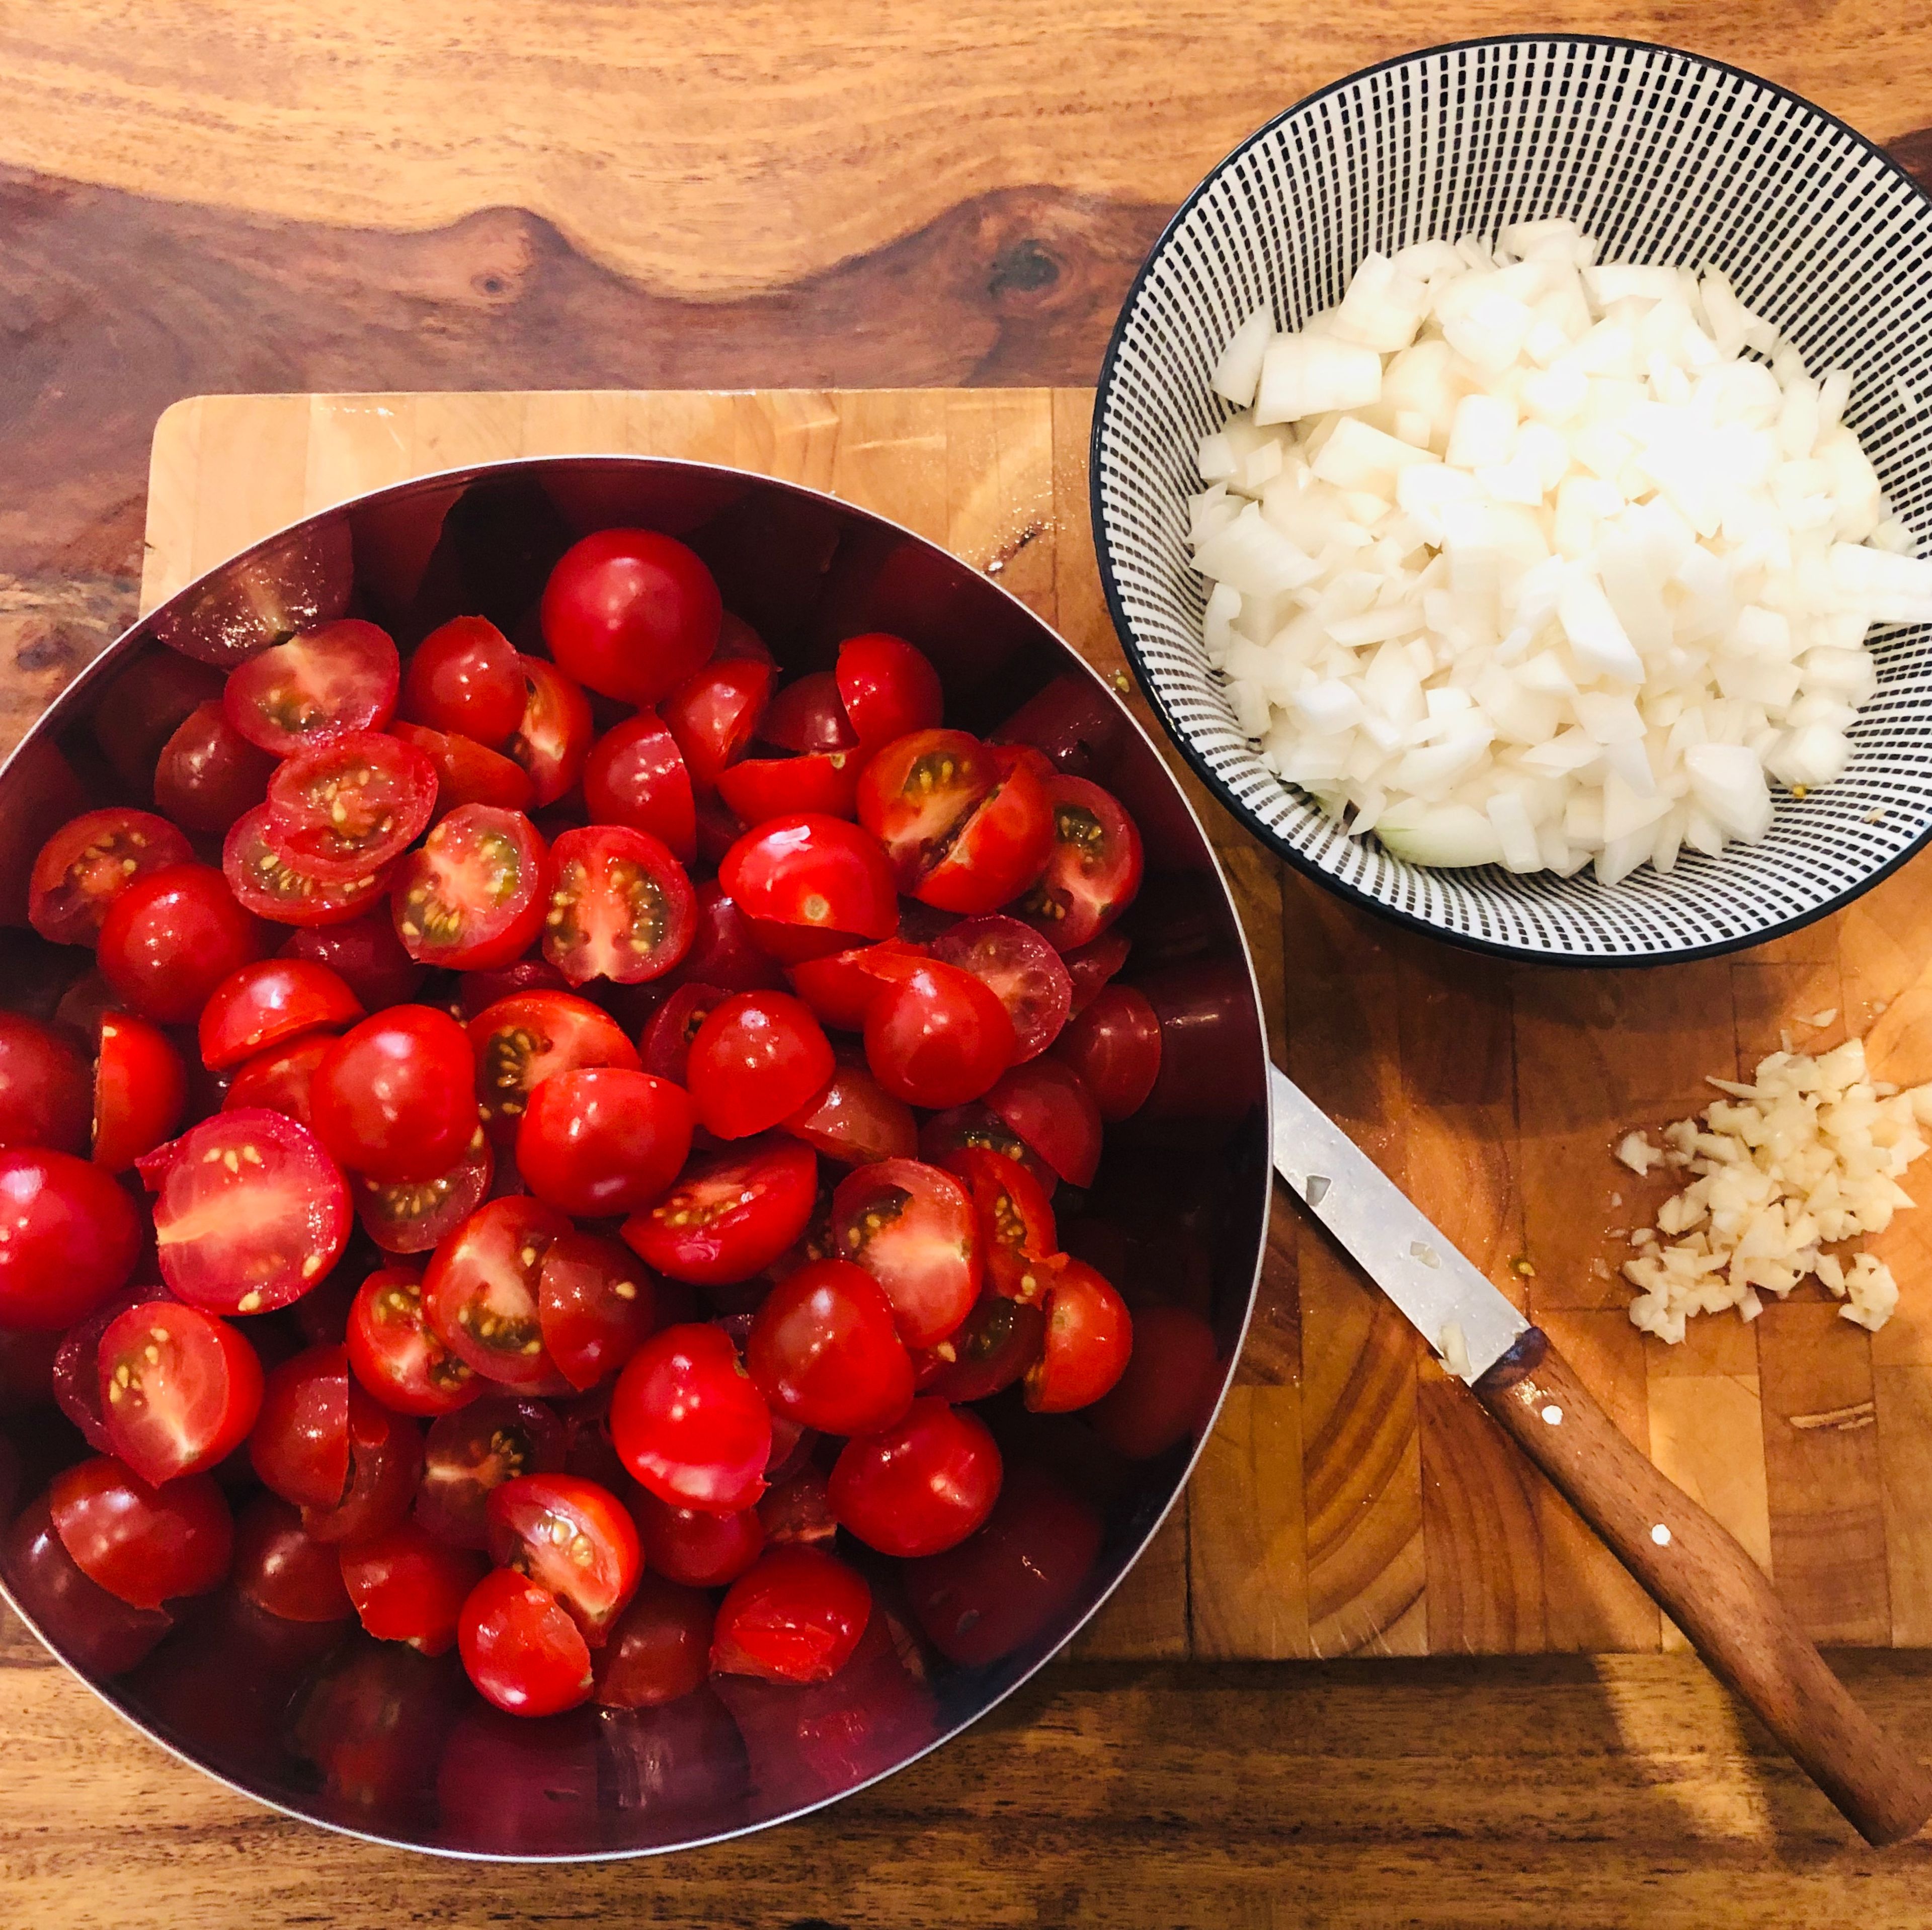 Jipih, es ist Zeit für hausgemachten Tomatenketchup! 🍅 Zuerst bereiten wir alles vor und schneiden die Tomaten, die Zwiebeln und den Knoblauch. Zwiebeln und Knoblauch dürfen fein geschnitten werden, die Tomaten können ruhig in etwas größere Stückchen geschnitten werden.